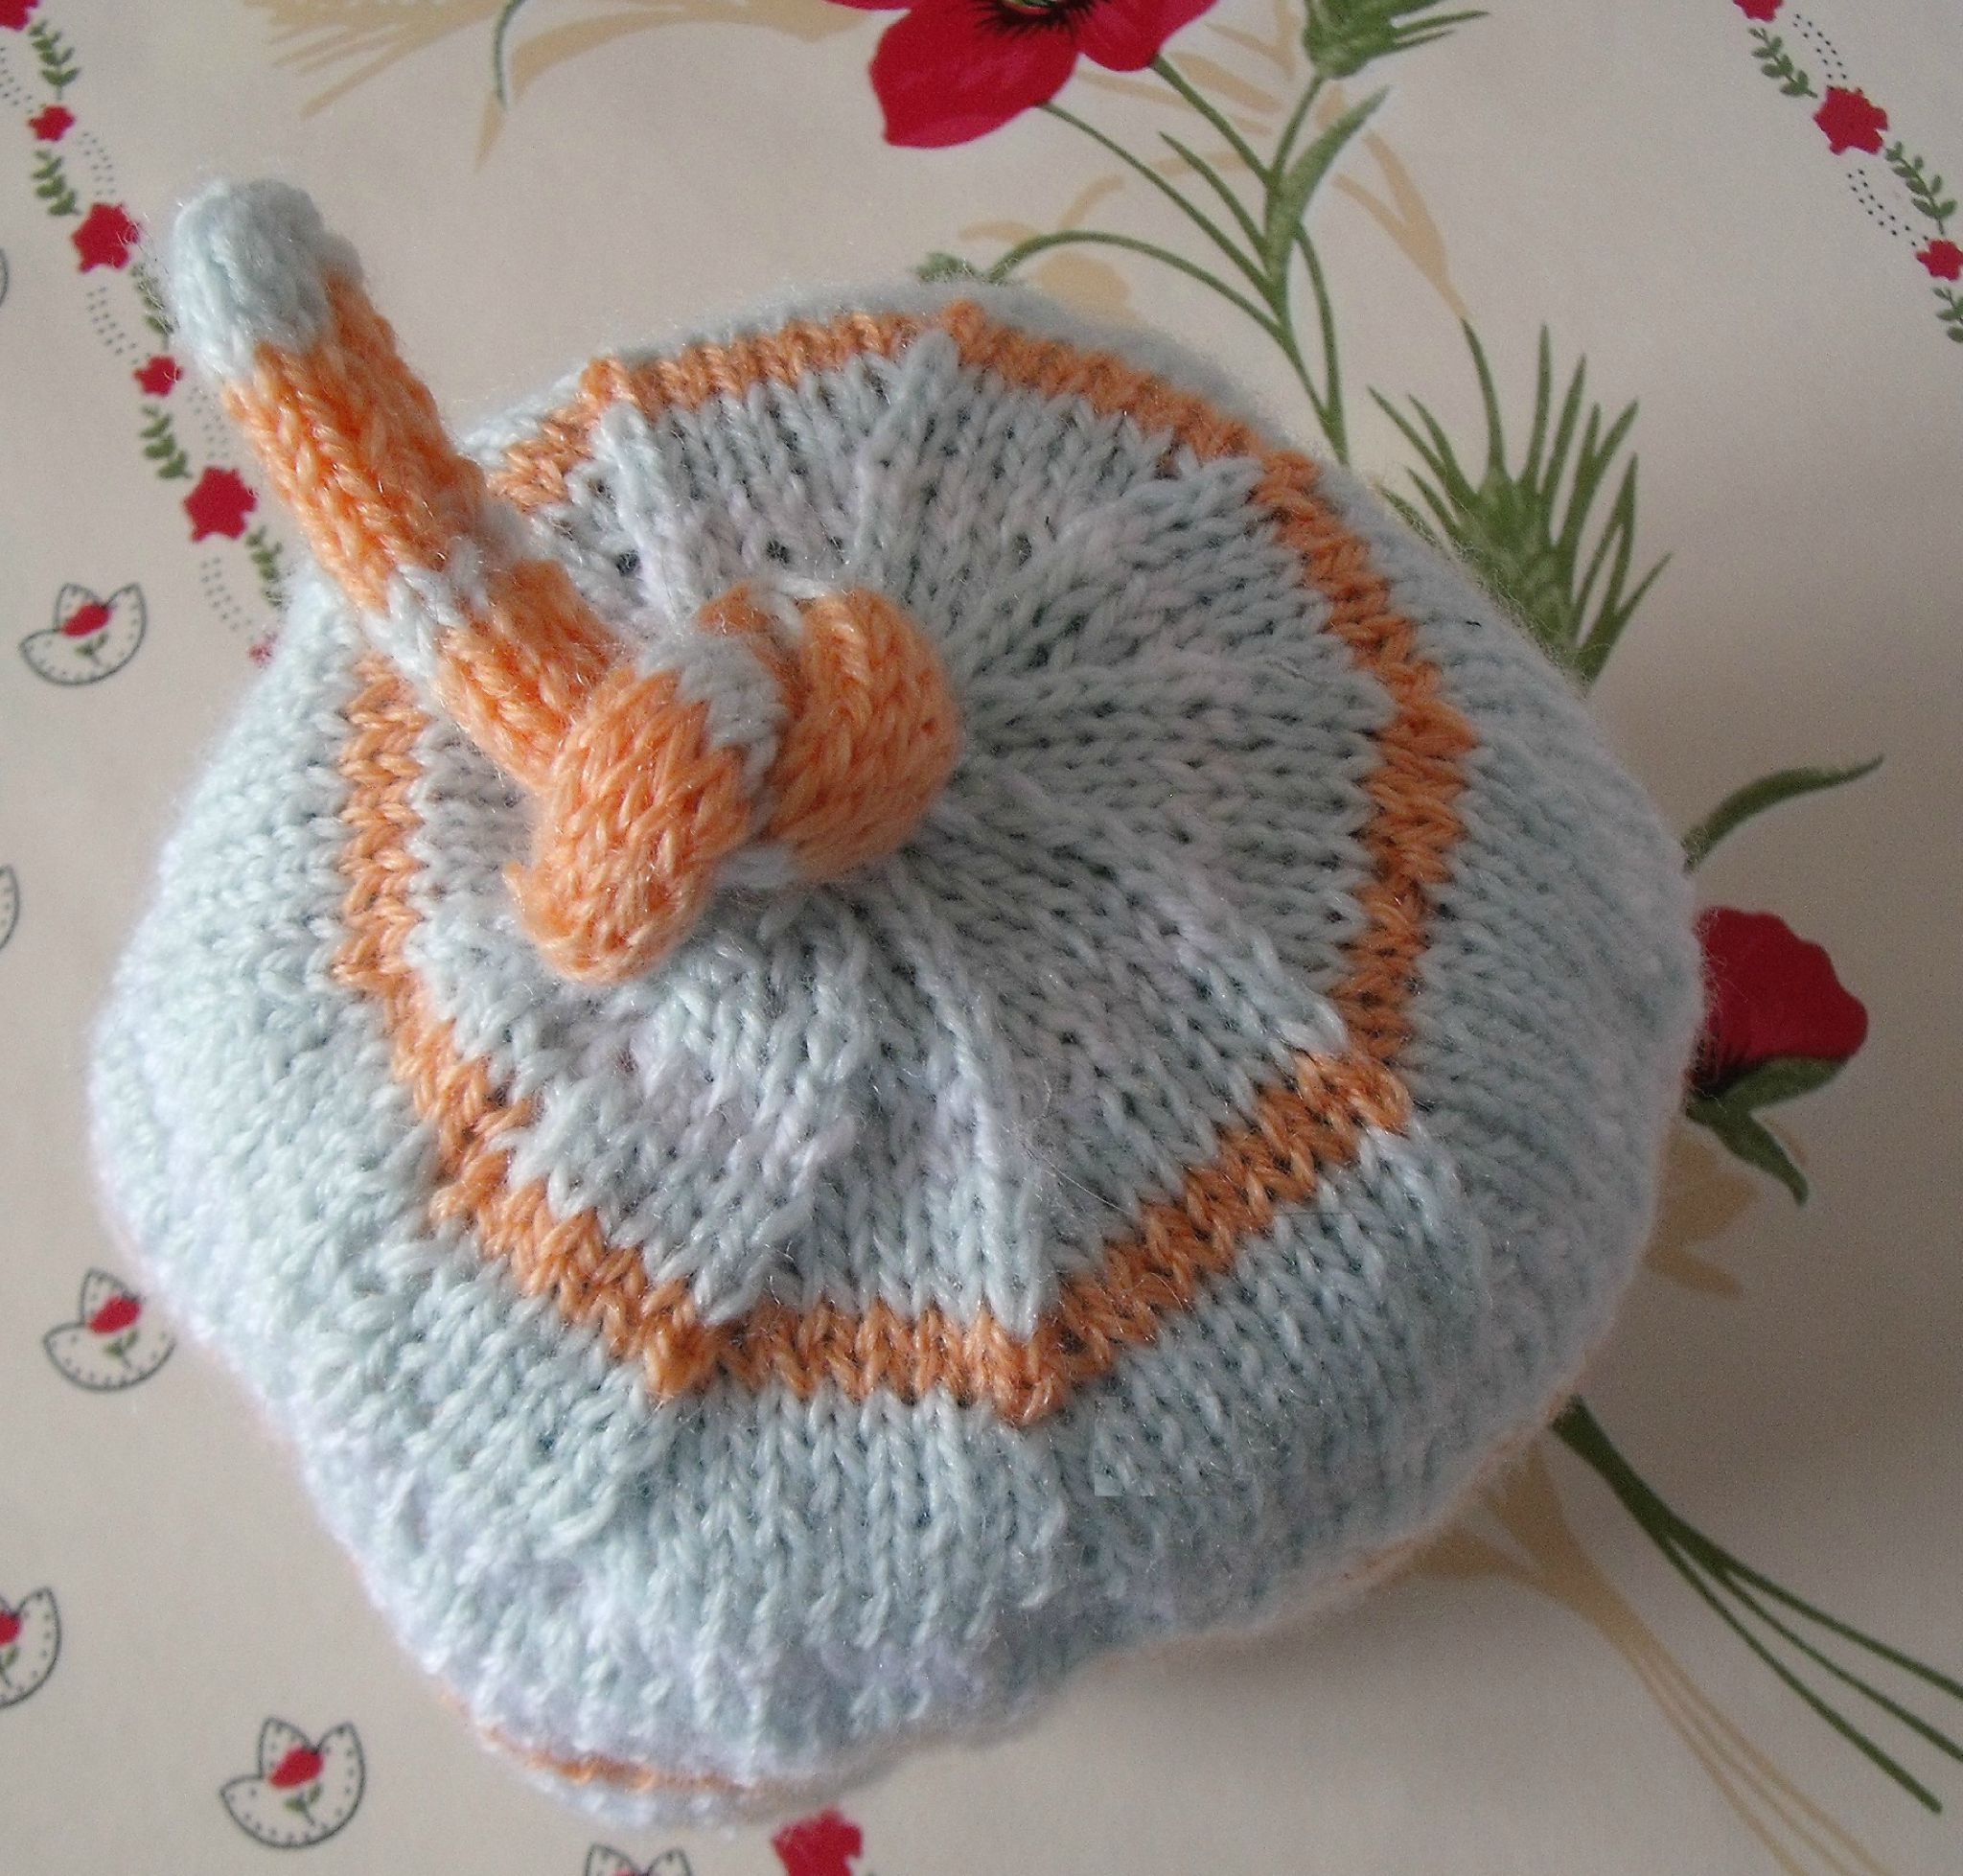 Apprendre a tricoter un bonnet naissance